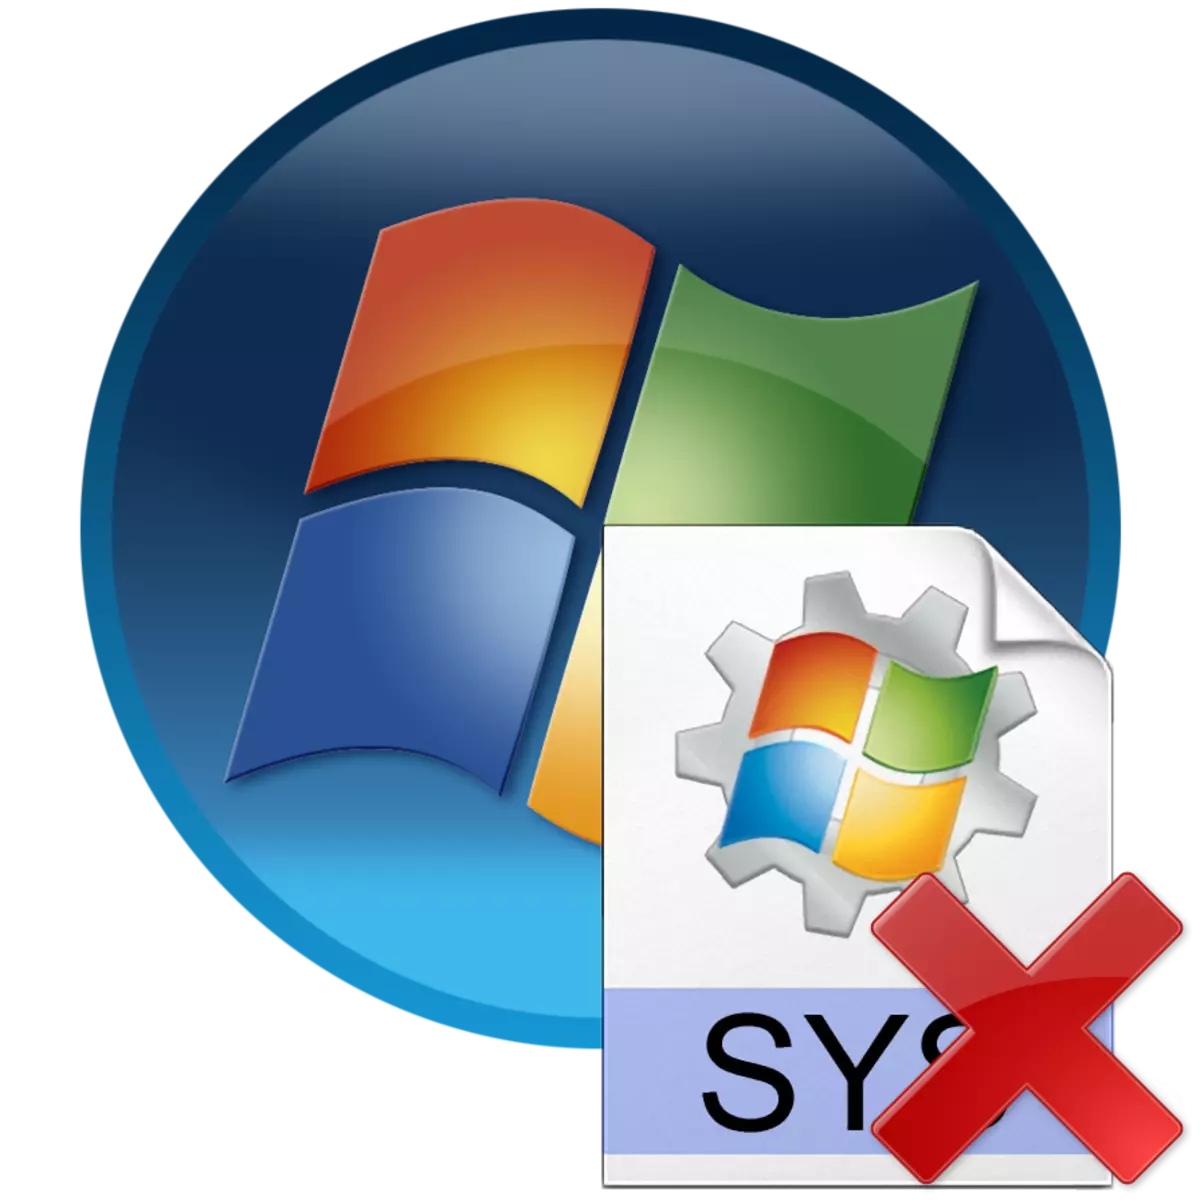 在Windows 7中删除Hiberfil.sys